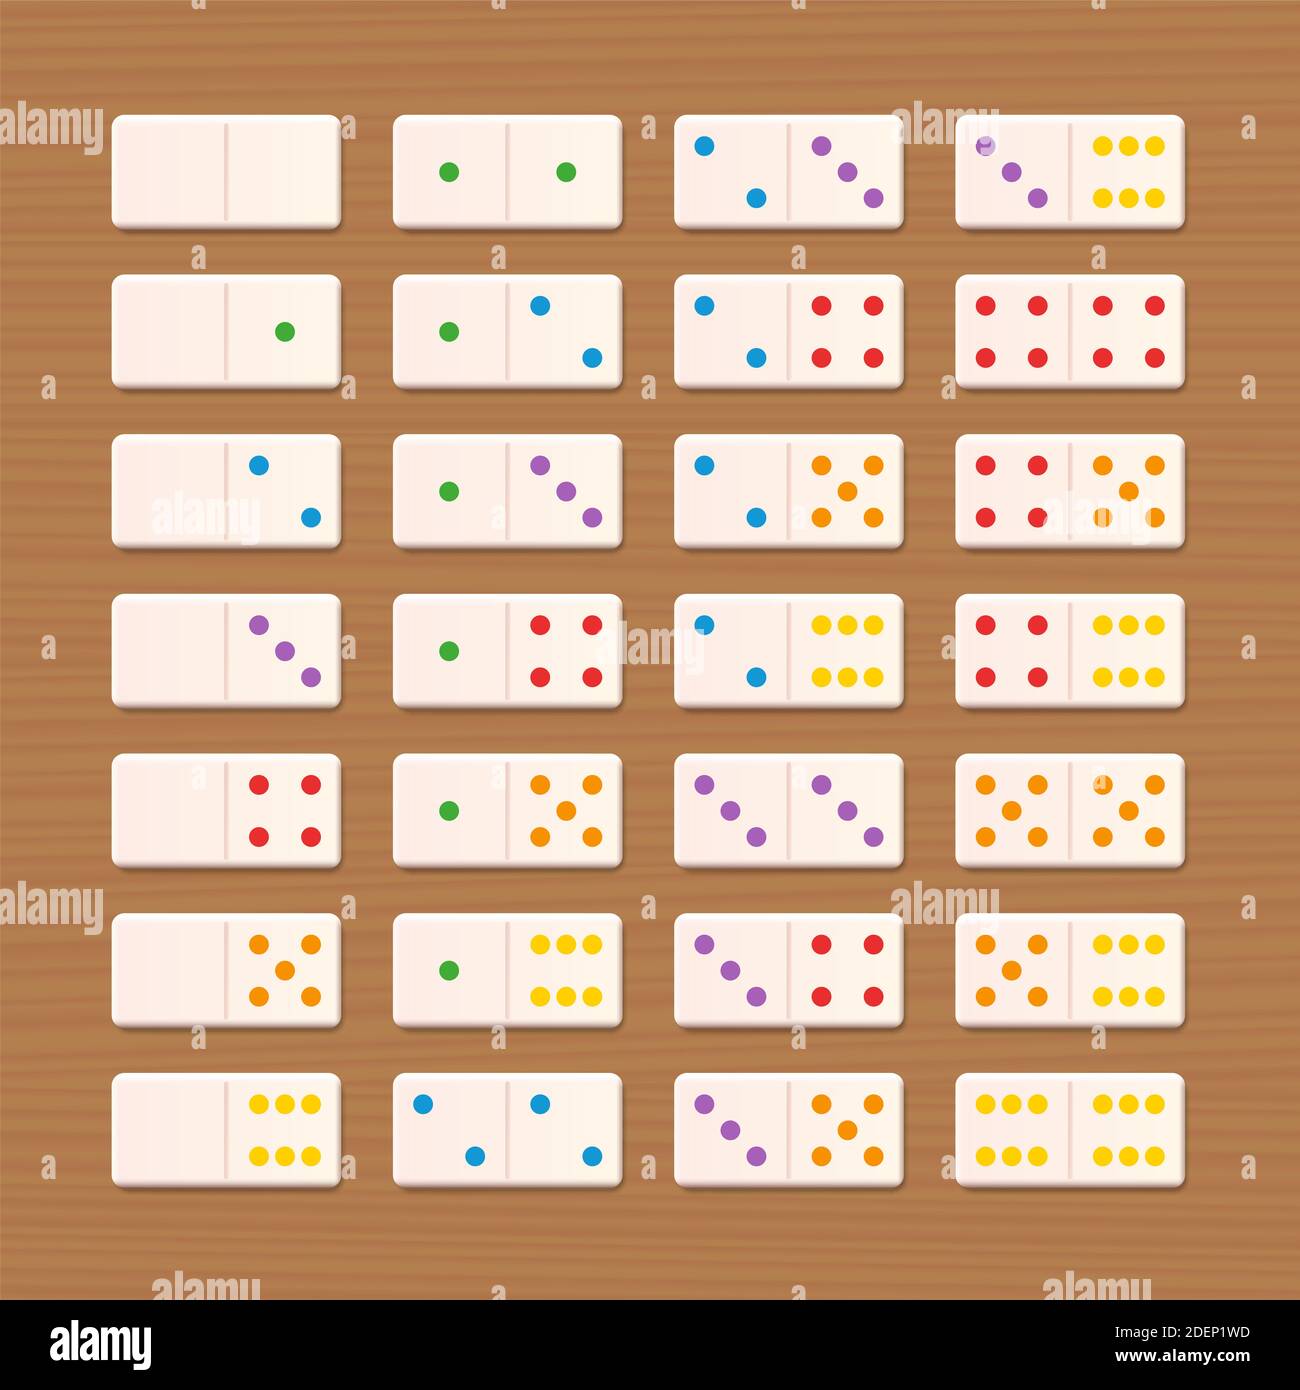 Set Domino, piastrelle bianche con punti colorati - set completo di gioco, collezione di 28 pezzi disposti - illustrazione su sfondo di legno. Foto Stock